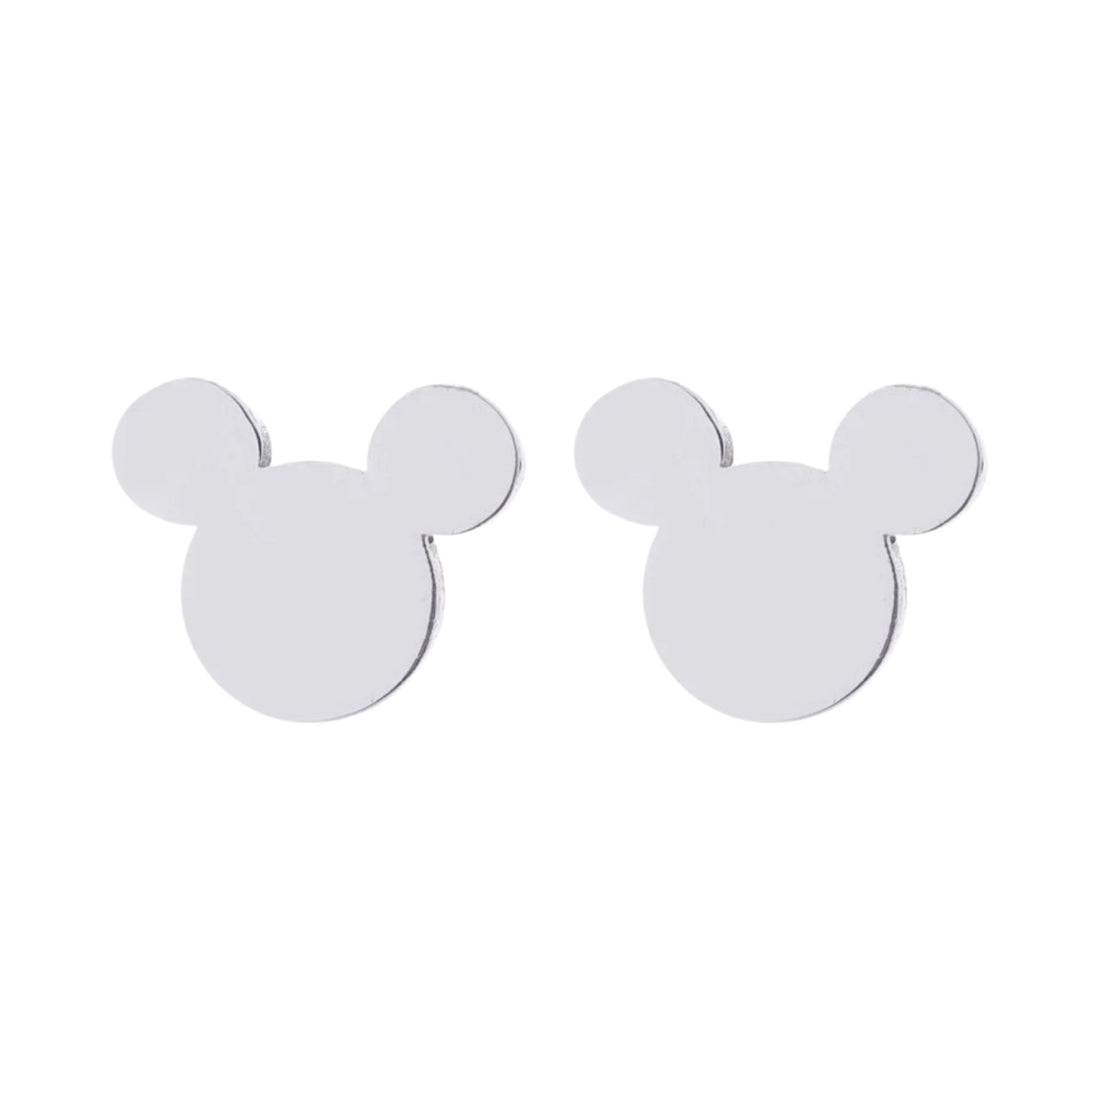 Chiralstahl-Ohrringe für Kinder: Maus